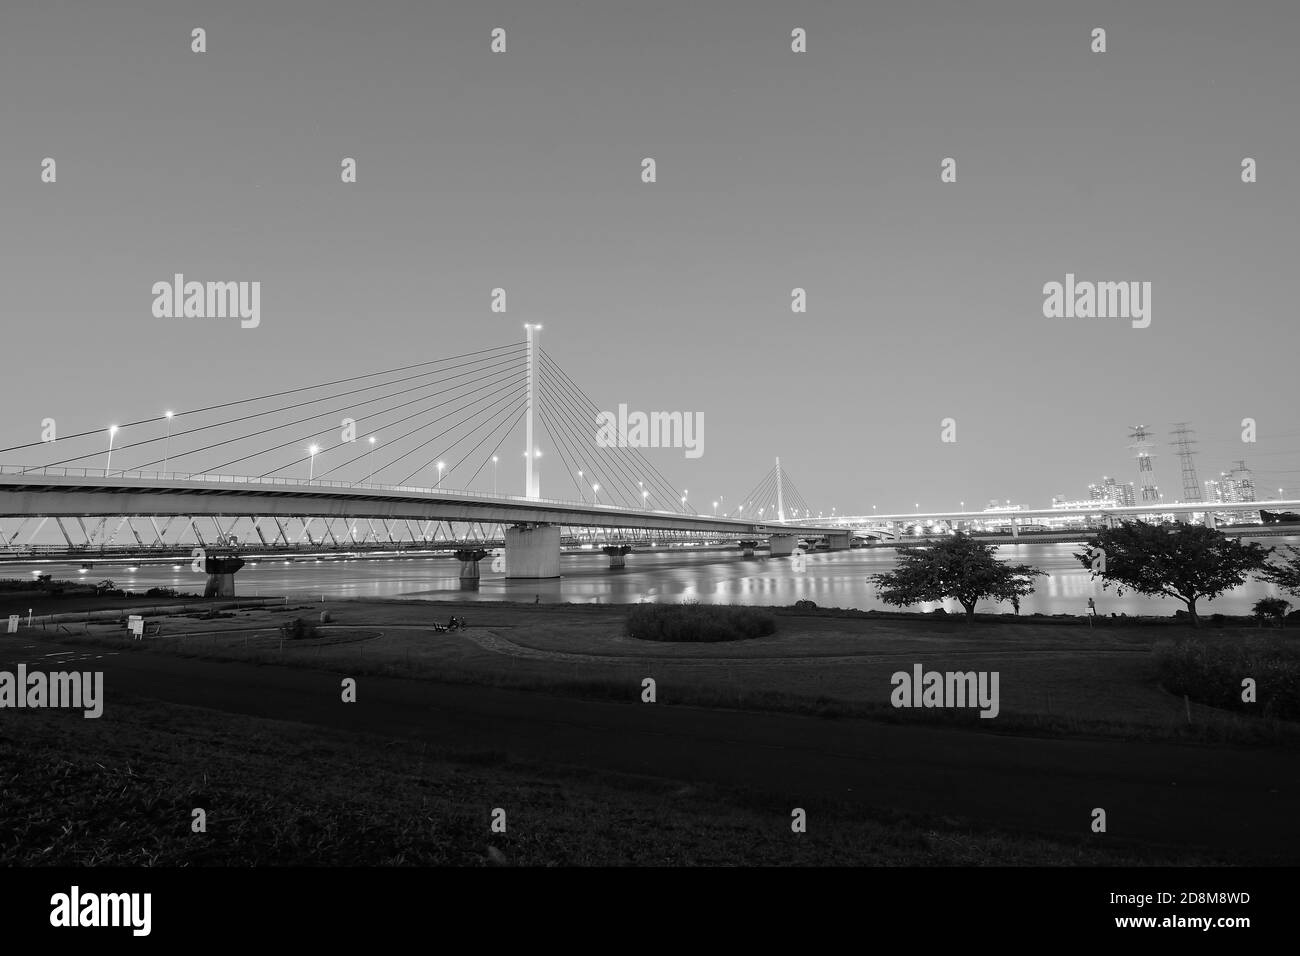 Paysage urbain de longue exposition de pont suspendu dans le ciel de crépuscule arrière-plan Banque D'Images